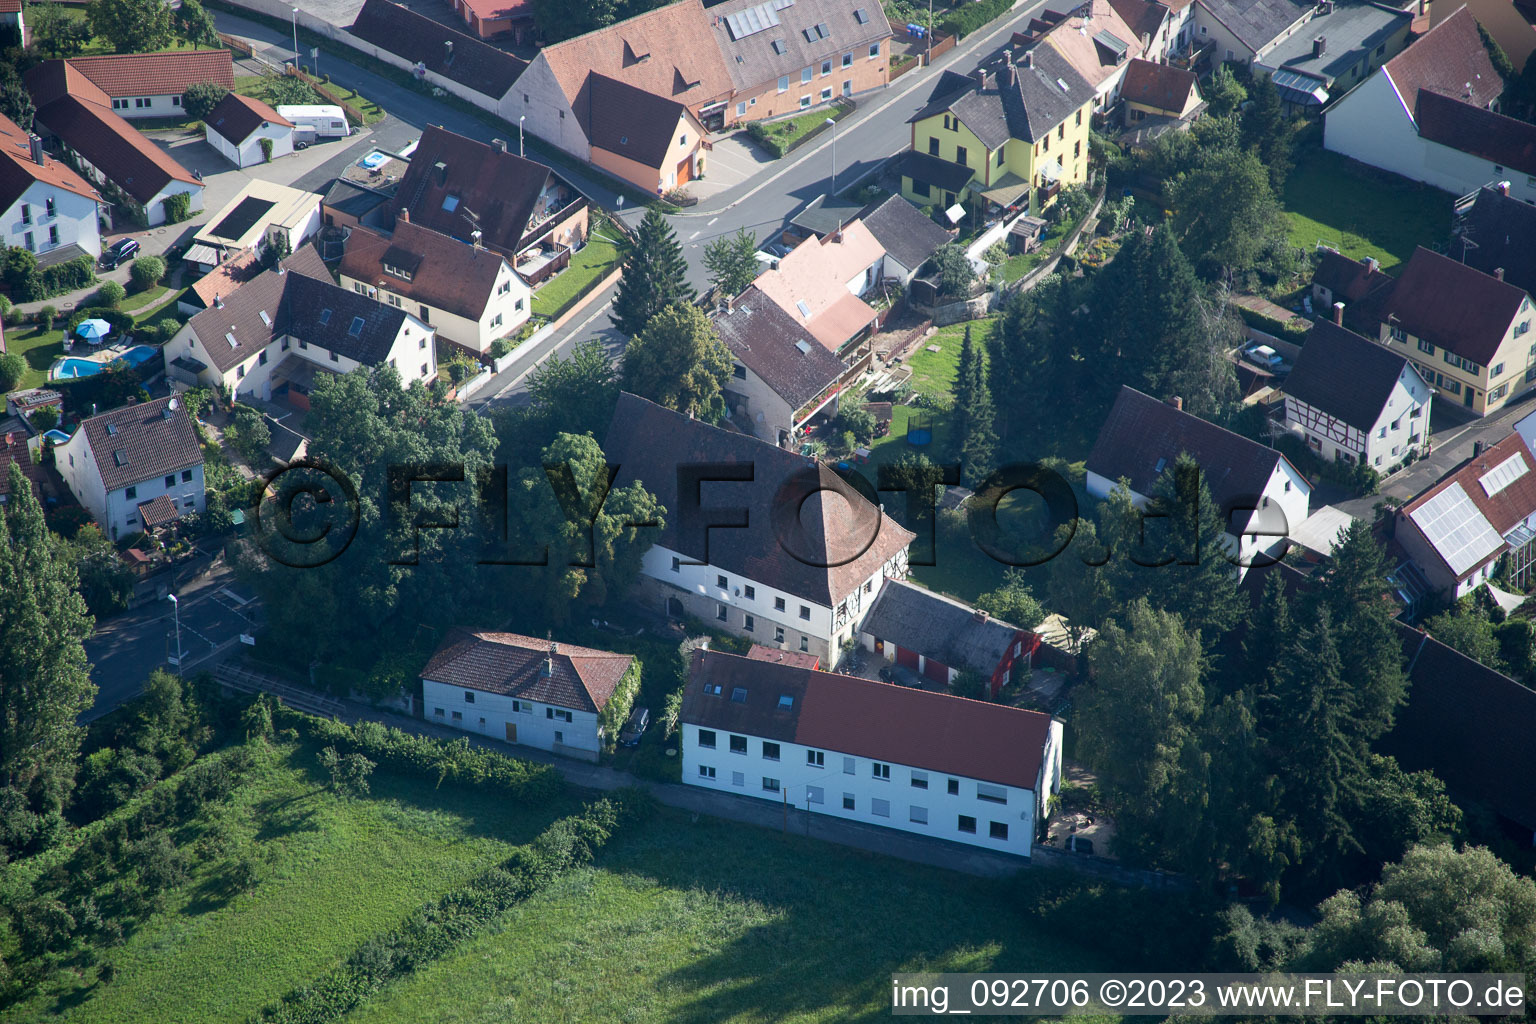 Frauenaurach im Bundesland Bayern, Deutschland von einer Drohne aus